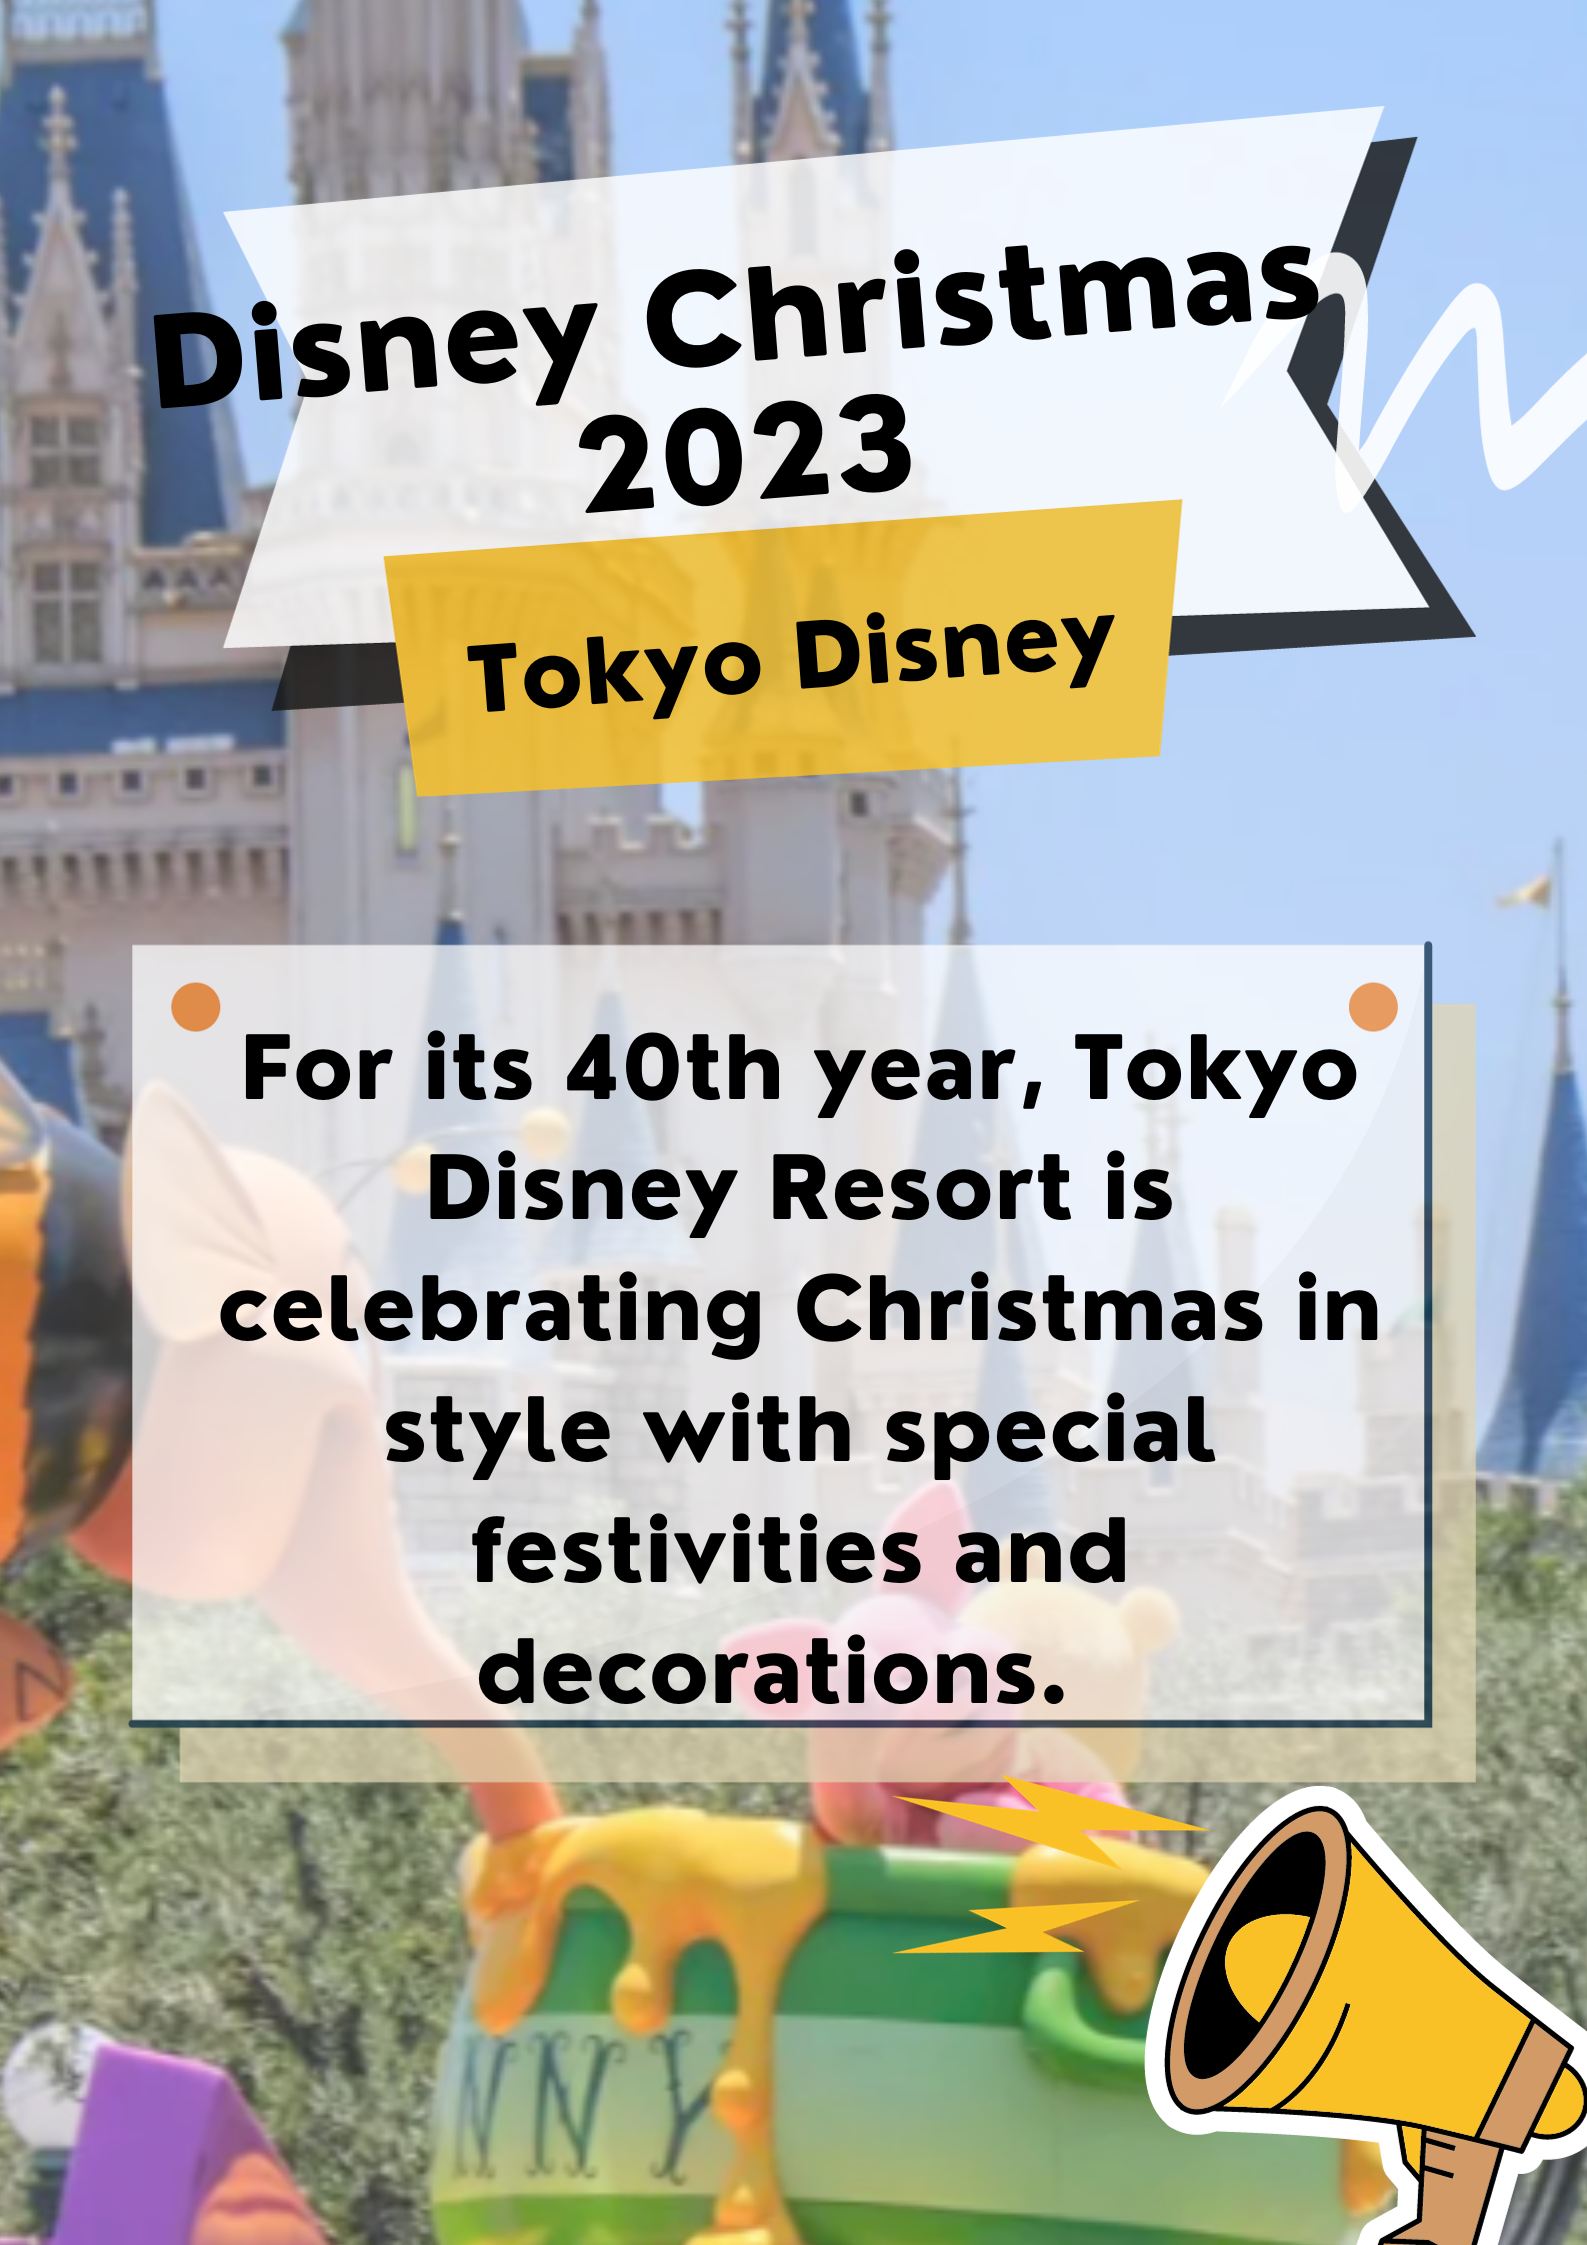 Tokyo Disney Resort - Disney Christmas 2024???? | Trip.com Urayasu